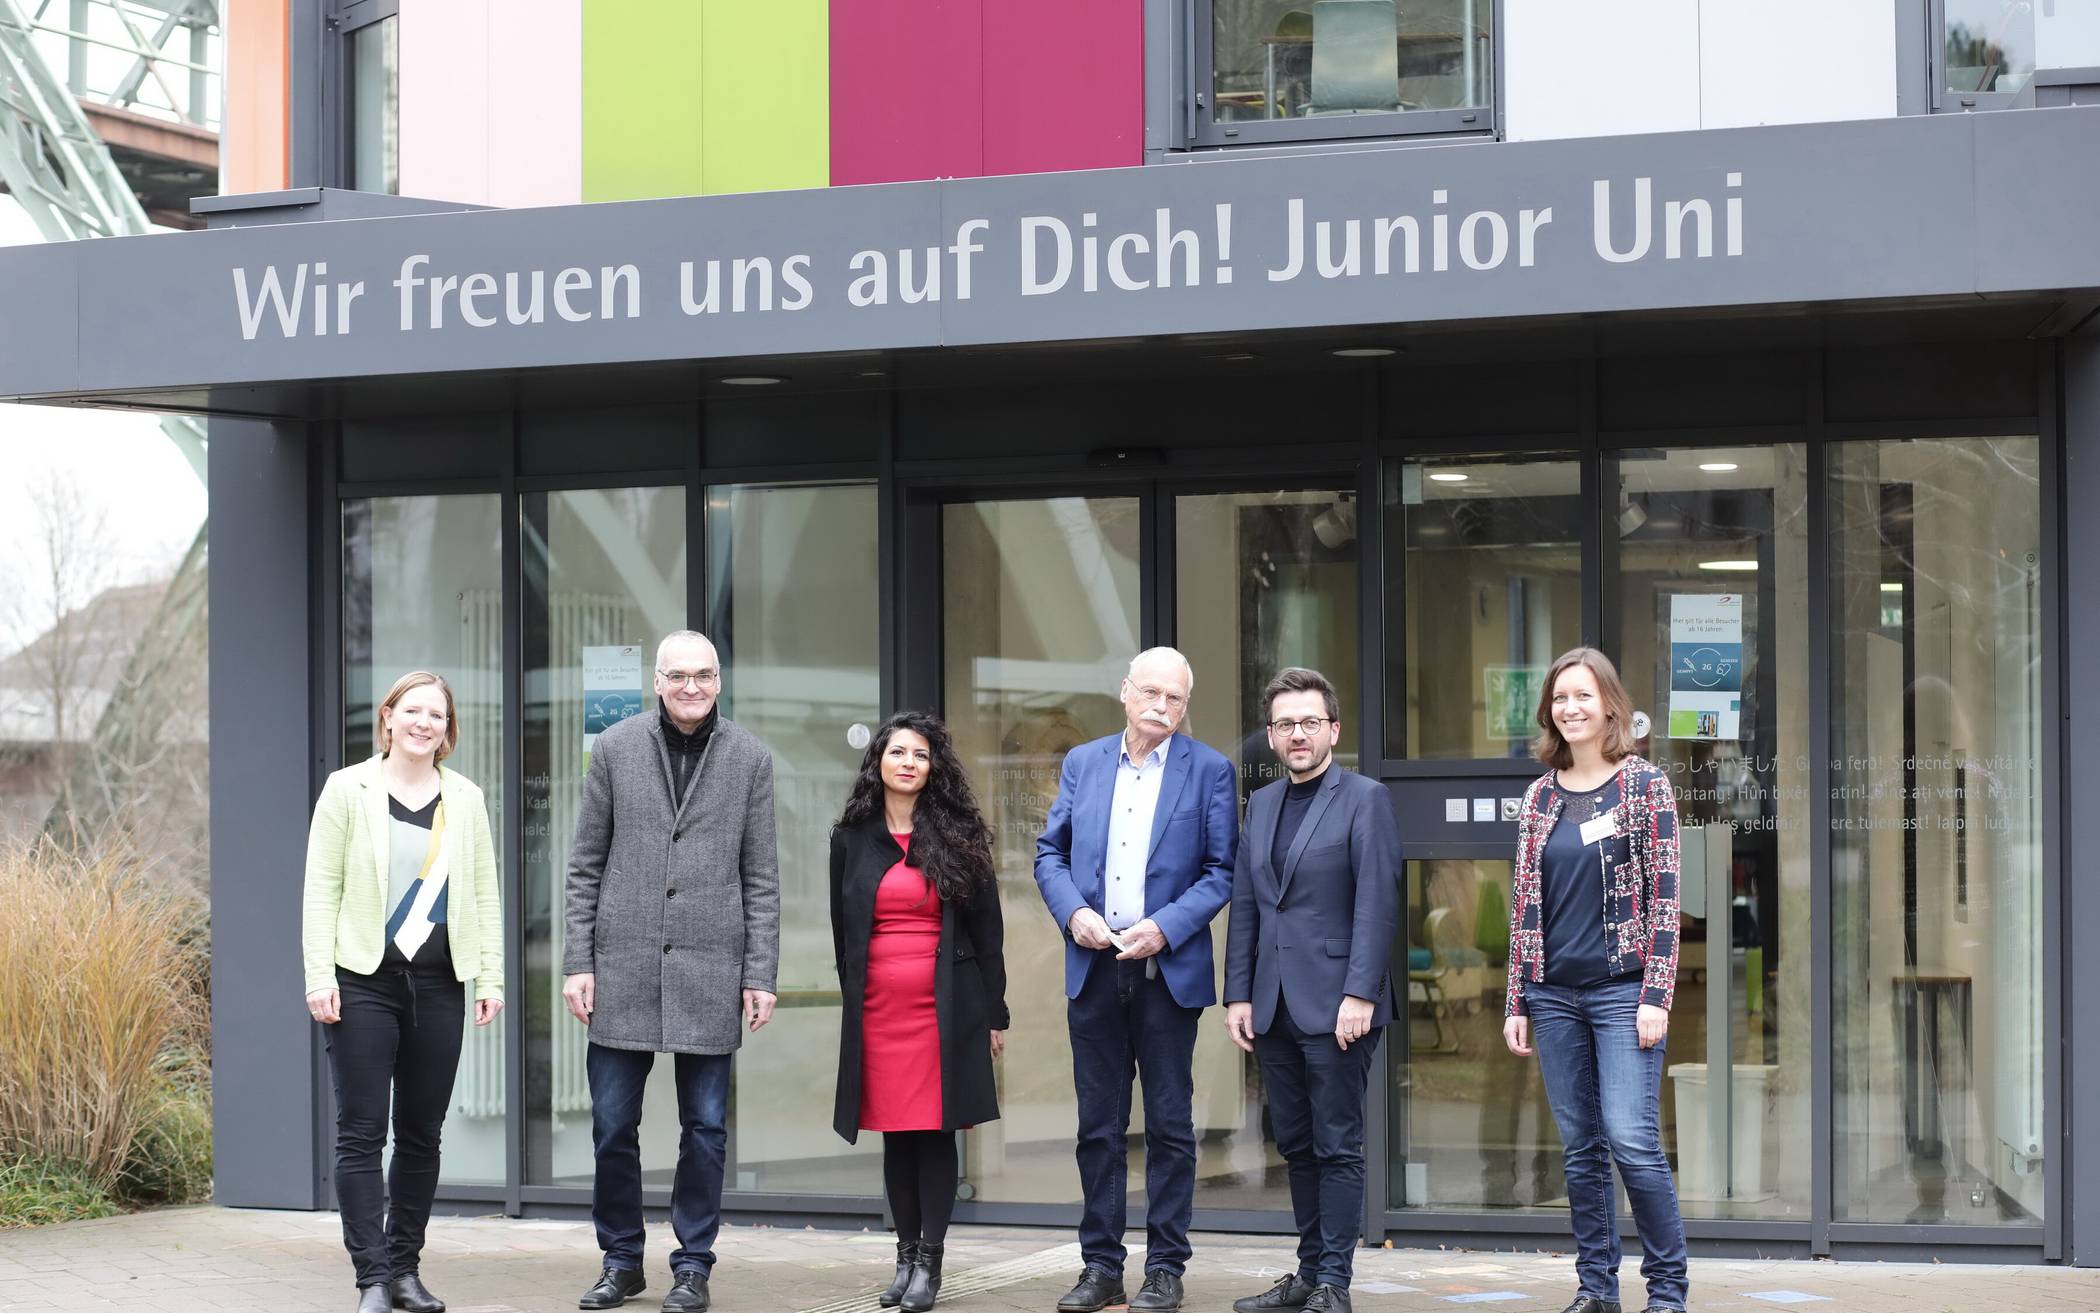  Thomas Kutschaty (2.v.r) besuchte mit Dietmar Bell (2.v.l.) und Dilek Engin (3.v.l., beide SPD Wuppertal) die Junior Uni. Geschäftsführer Ernst-Andreas Ziegler (3.v.r.) und die Geschäftsführerinnen Dr. Ariane Staab (li.) und Dr. Annika Spathmann (re.) stellten das Konzept vor. 